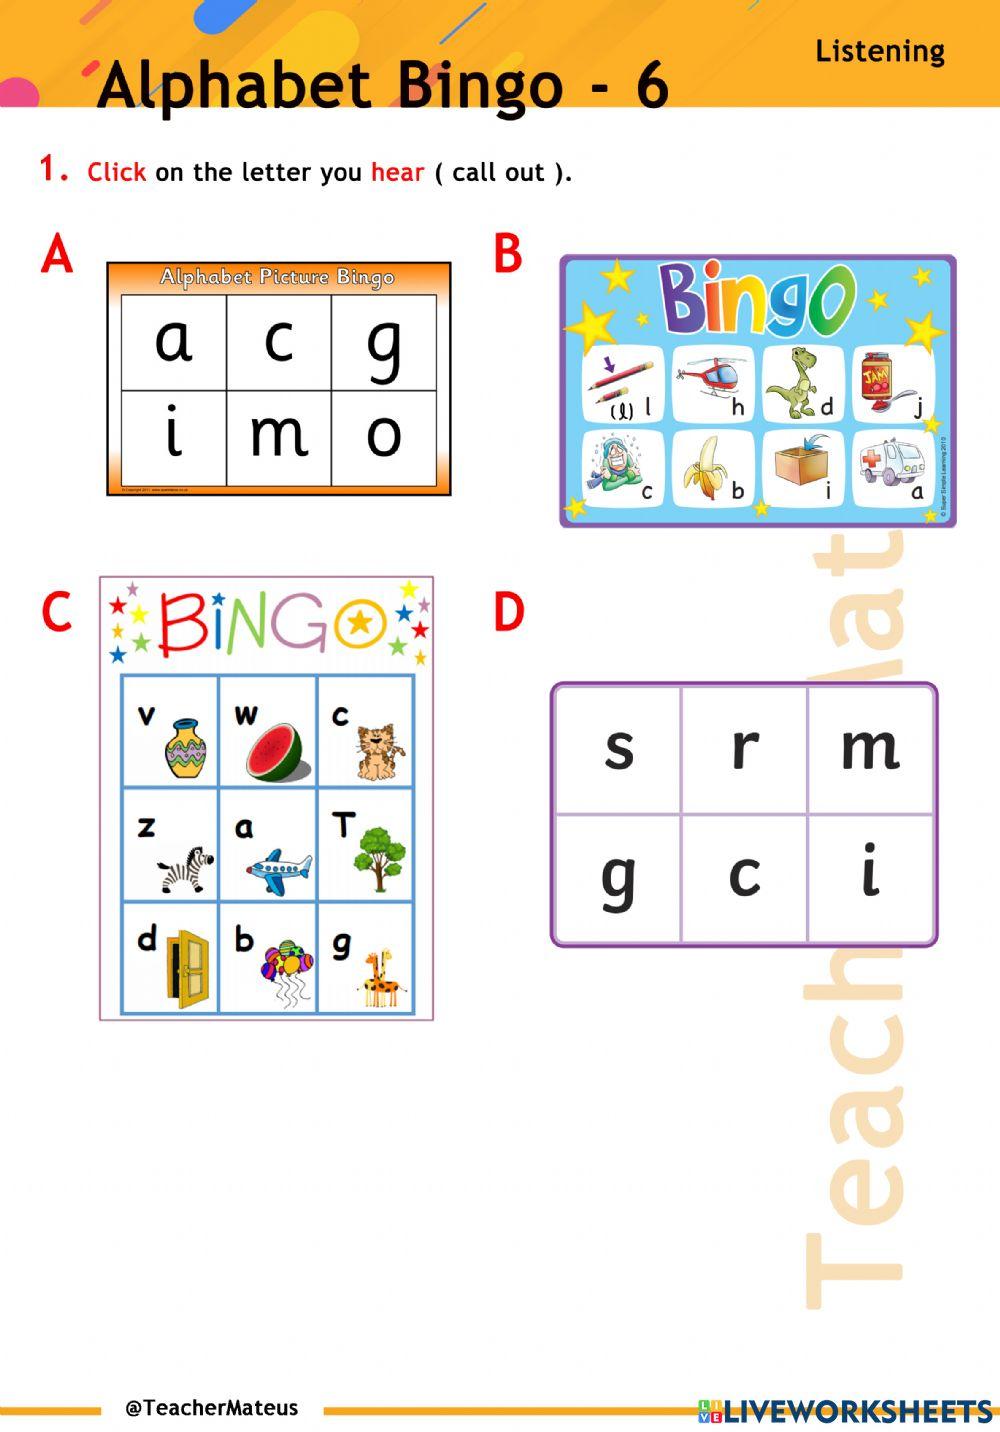 Alphabet Bingo - 6